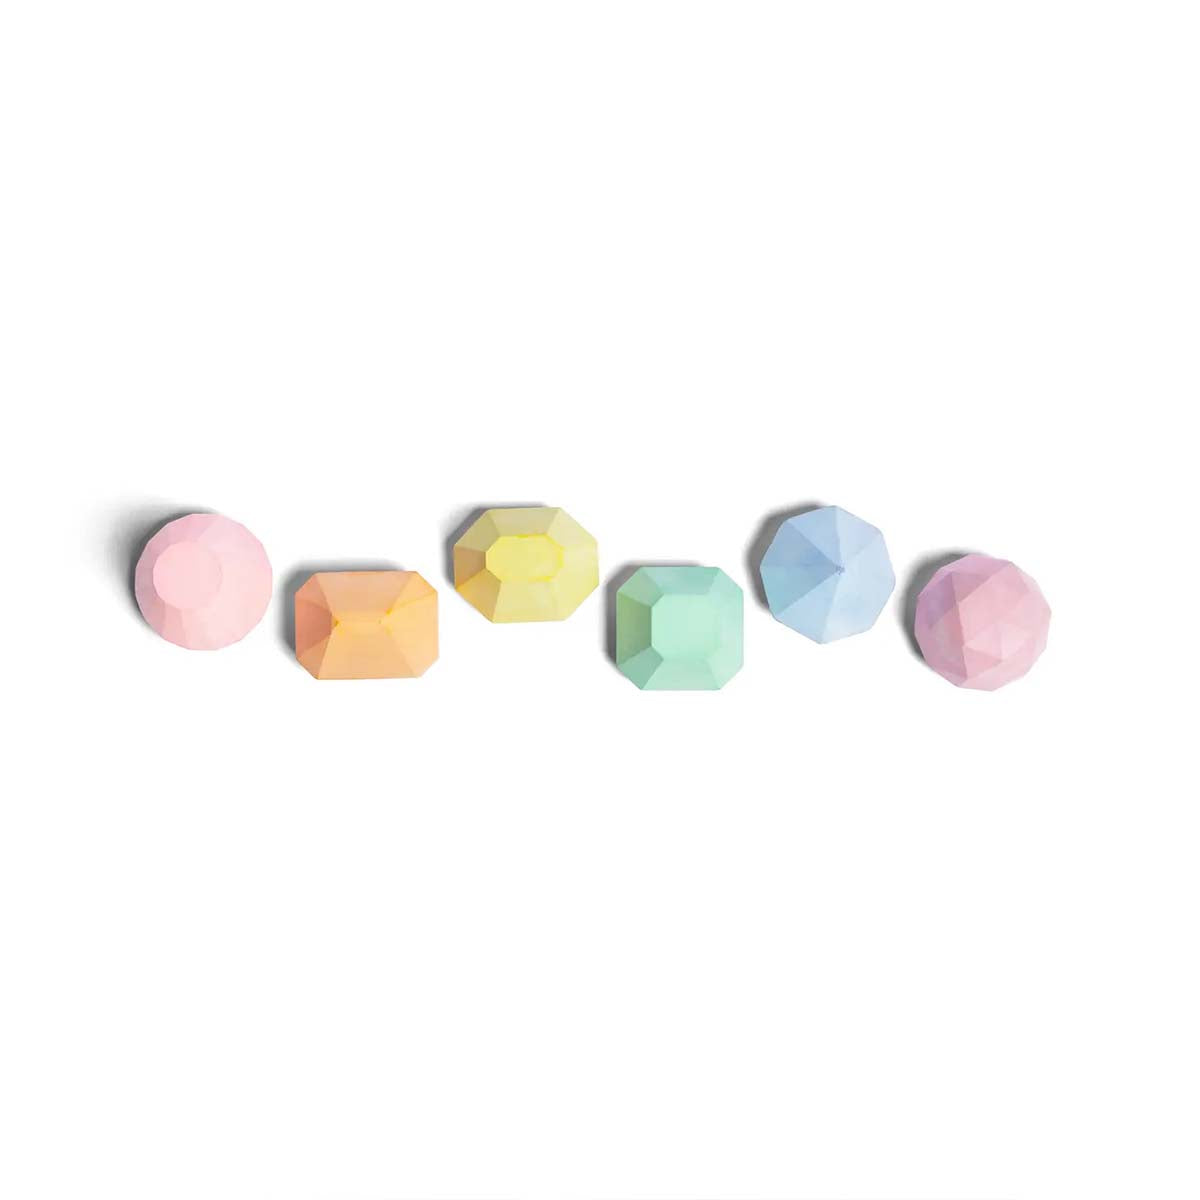 Stoepkrijten is dubbel zo leuk met deze stoepkrijt edelstenen van het merk TWEE. Deze set bestaat uit 12 stoepkrijten in de vorm van edelstenen en allemaal hebben ze een prachtige pastelkleur! VanZus